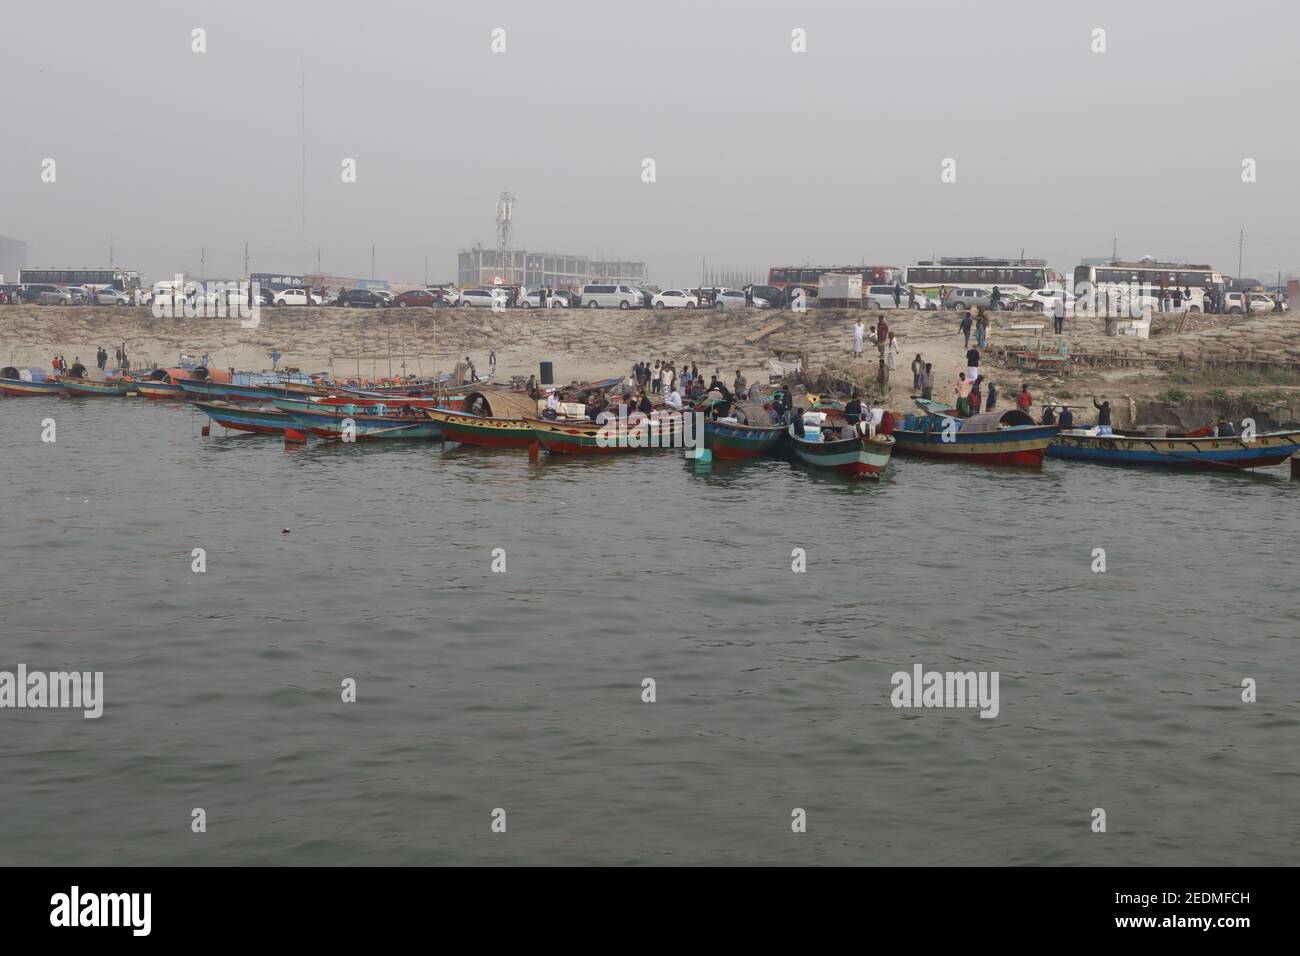 Bangladesch ist ein Land der Flüsse. Der Wassertransport ist hier eines der wichtigsten Verkehrssysteme. Lauch, Fähre, Boot und Schnellboot ist das Hauptfahrzeug hier. Stockfoto